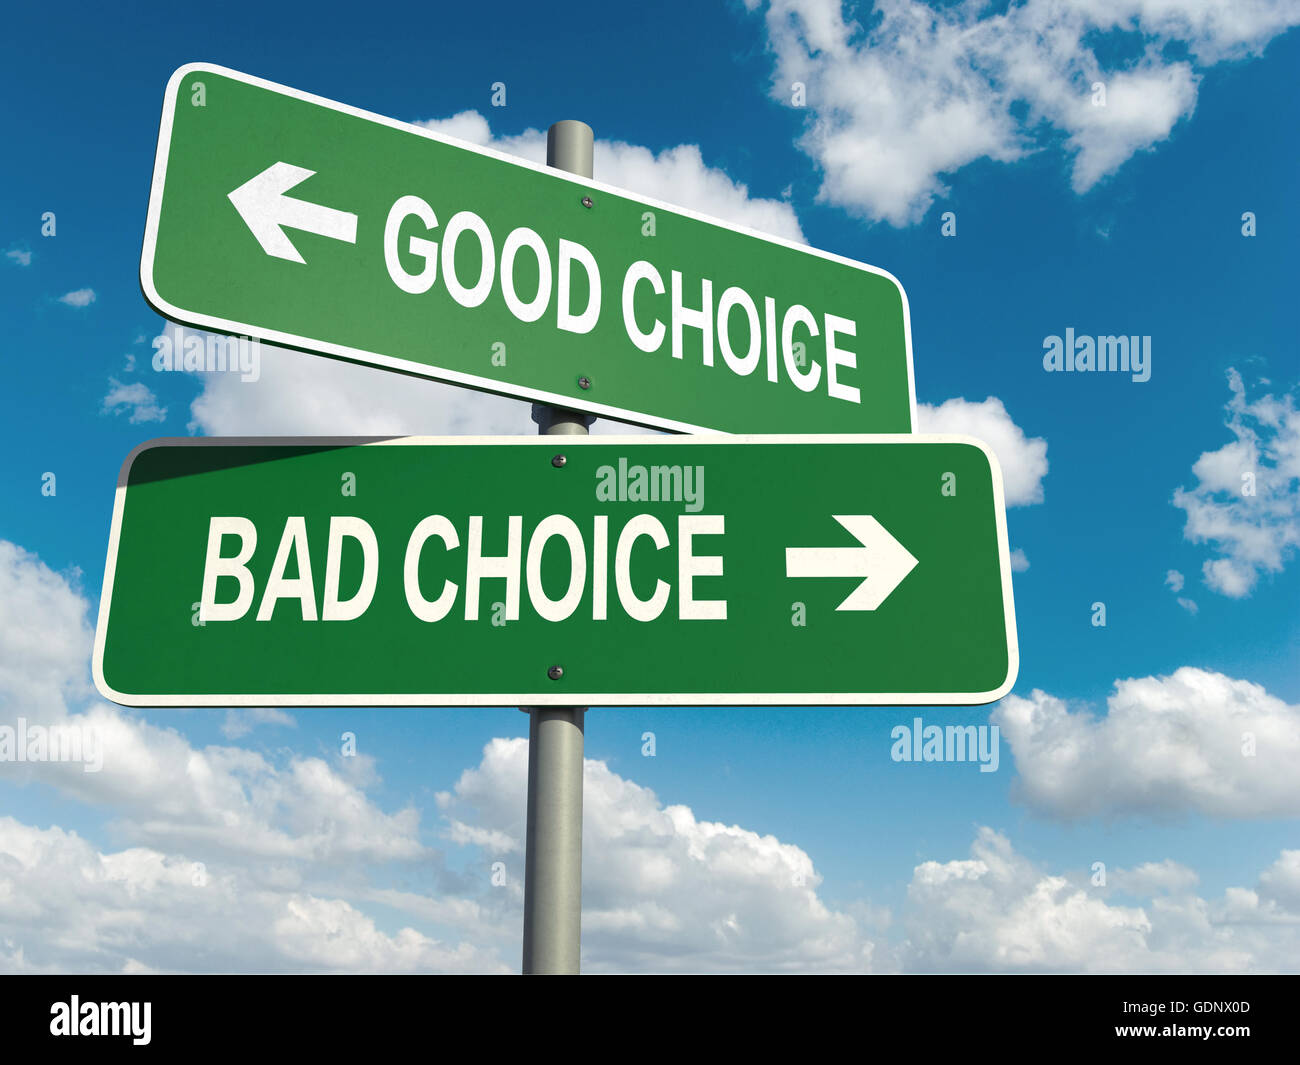 Ein Straßenschild mit gute Wahl schlechte Wahl Worte am Himmelshintergrund Stockfoto